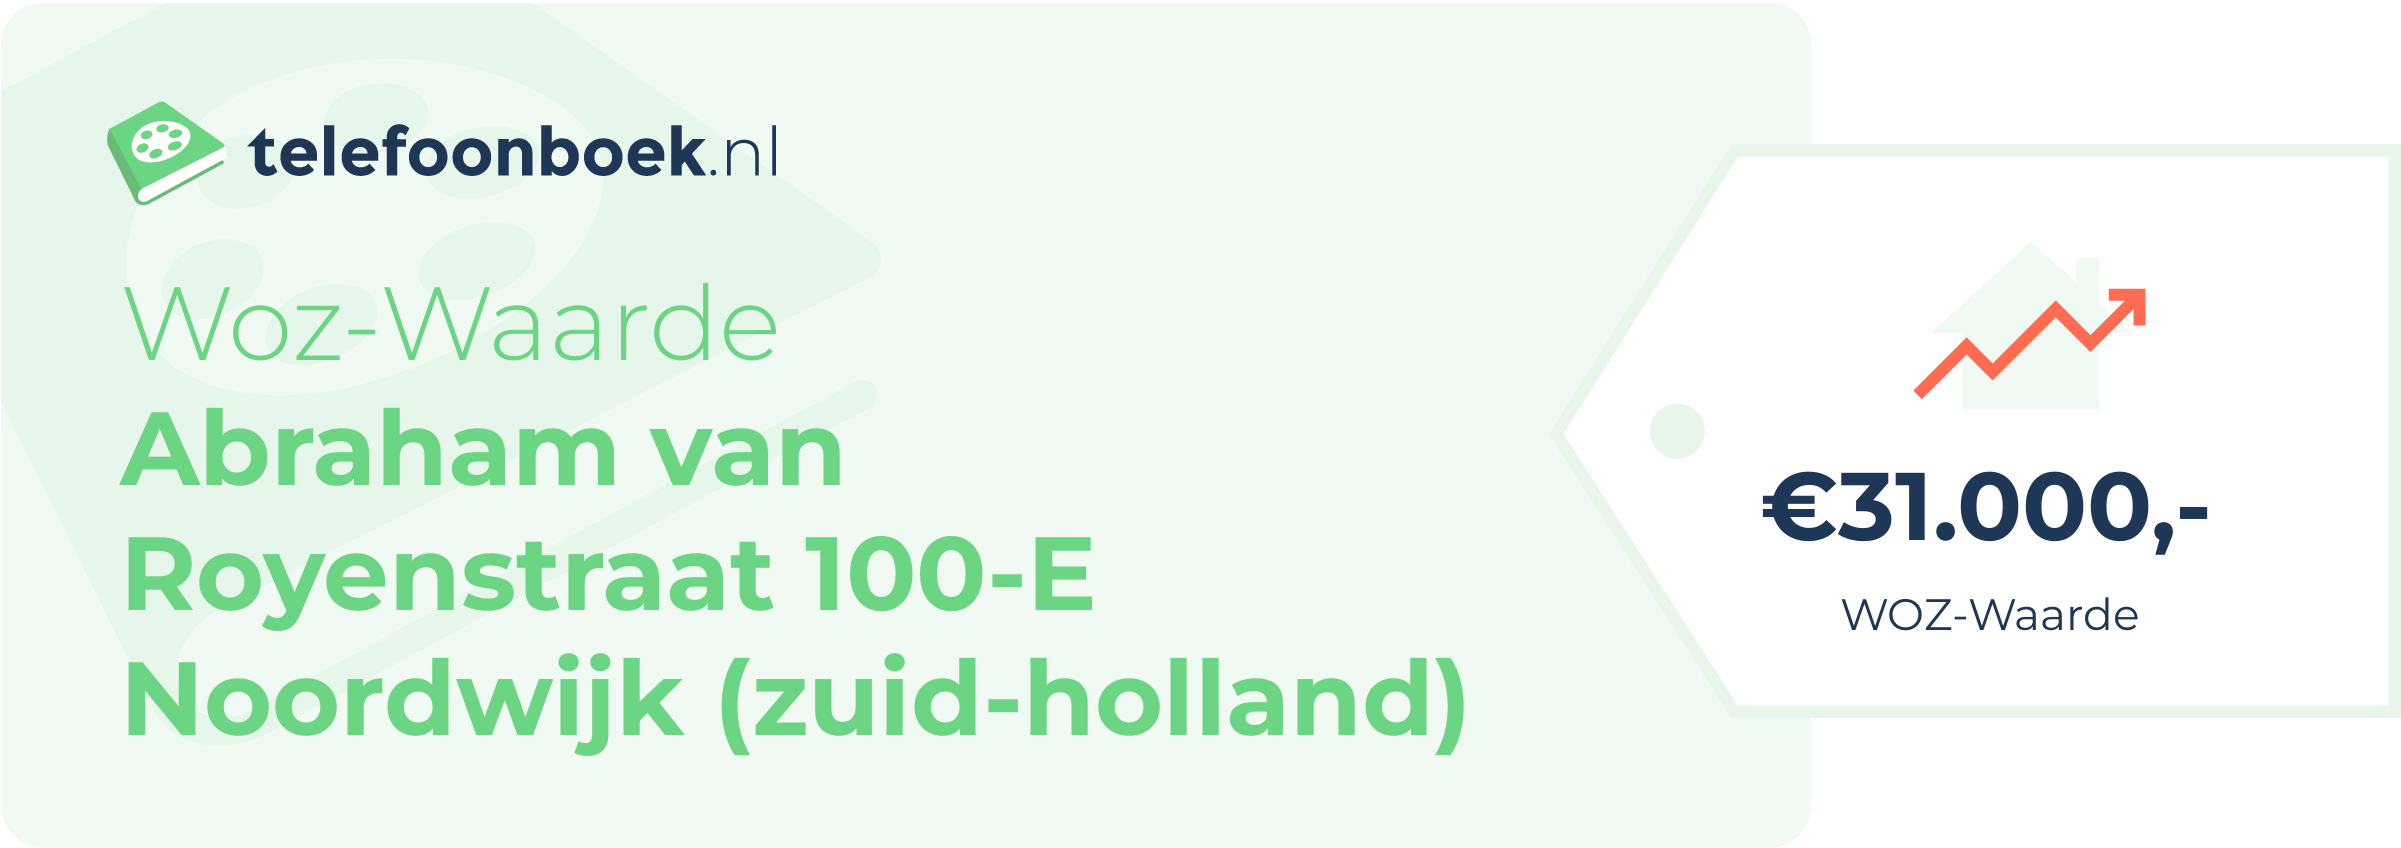 WOZ-waarde Abraham Van Royenstraat 100-E Noordwijk (Zuid-Holland)